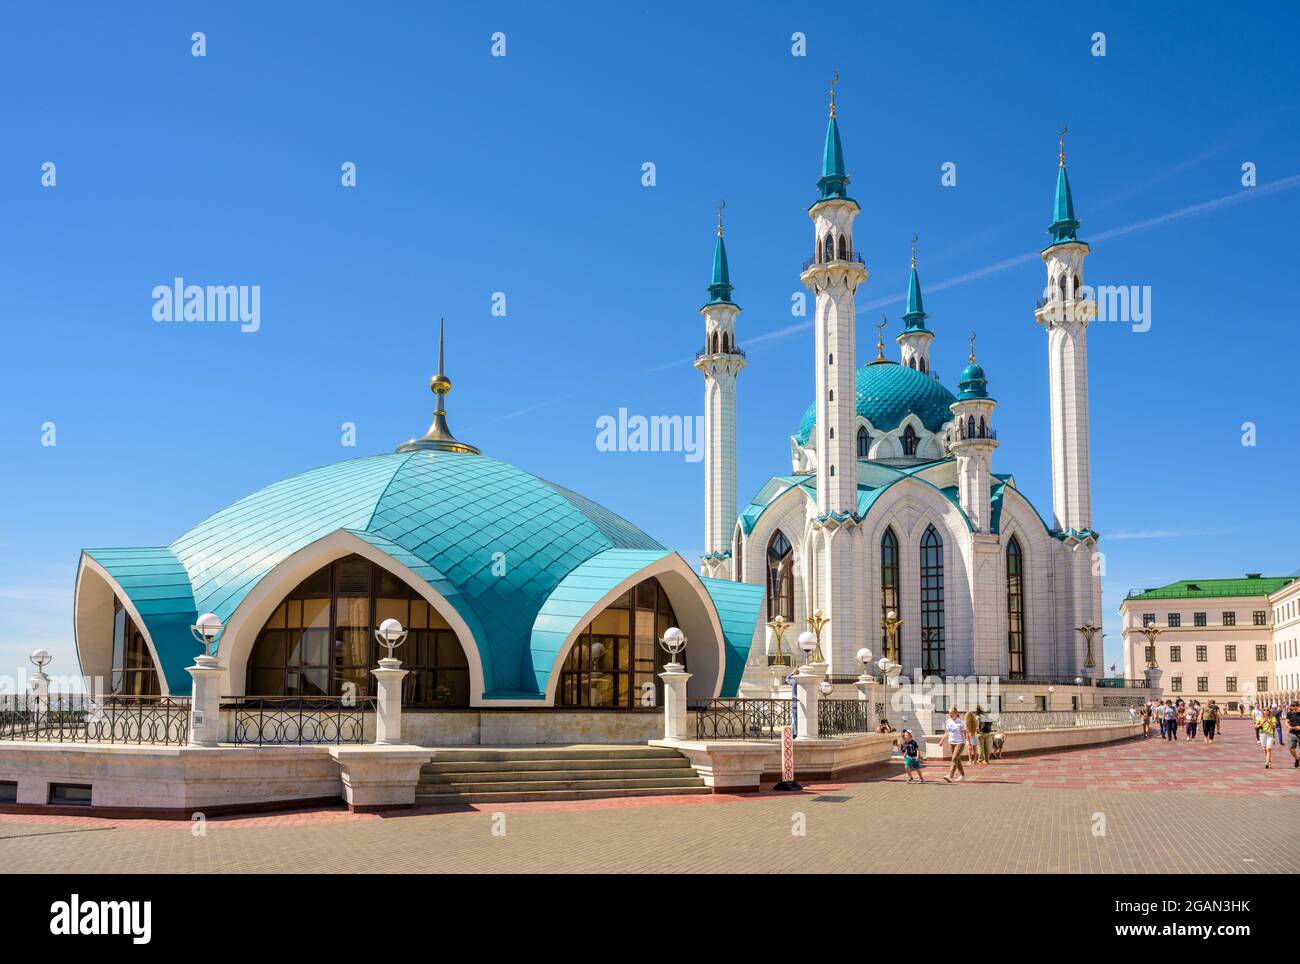 Mosquée Kul Sharif au Kremlin kazan, Tatarstan, Russie. C'est un monument célèbre de Kazan. Belle architecture islamique, touristique Banque D'Images